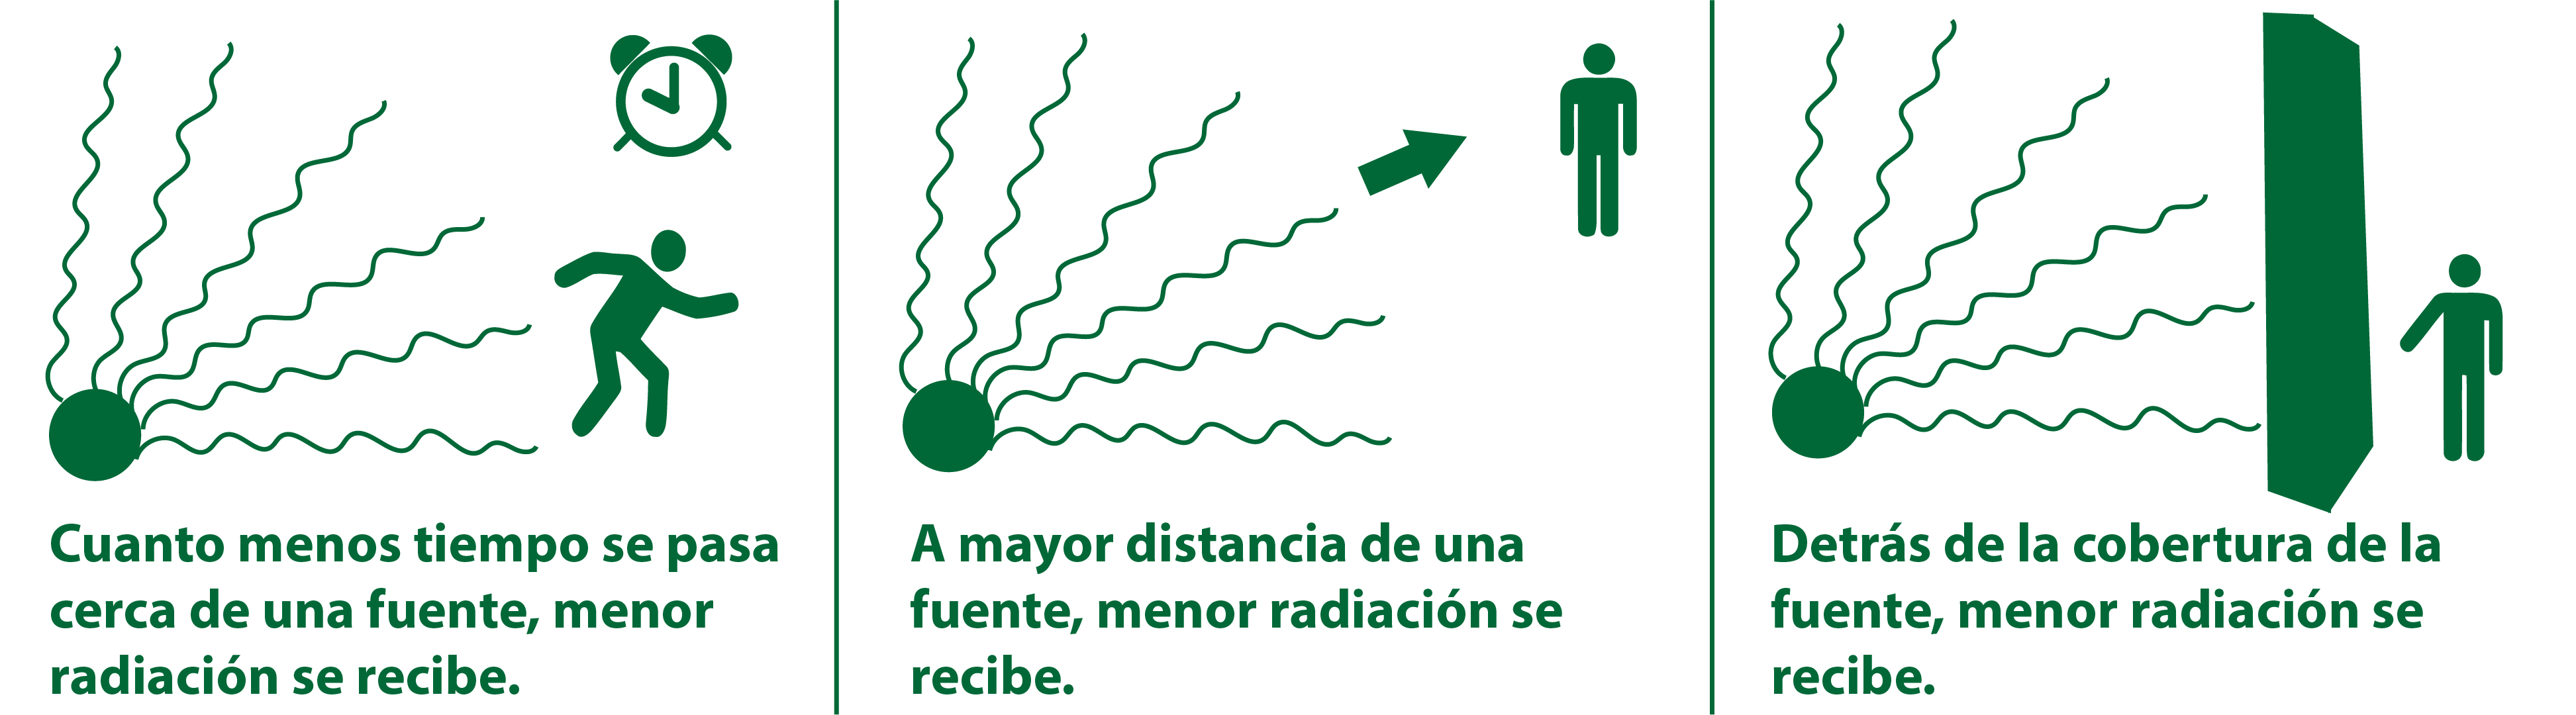 Gráfica con instrucciones escritas sobre el tiempo, distancia y cobertura necesaria para protegerse de la radiación